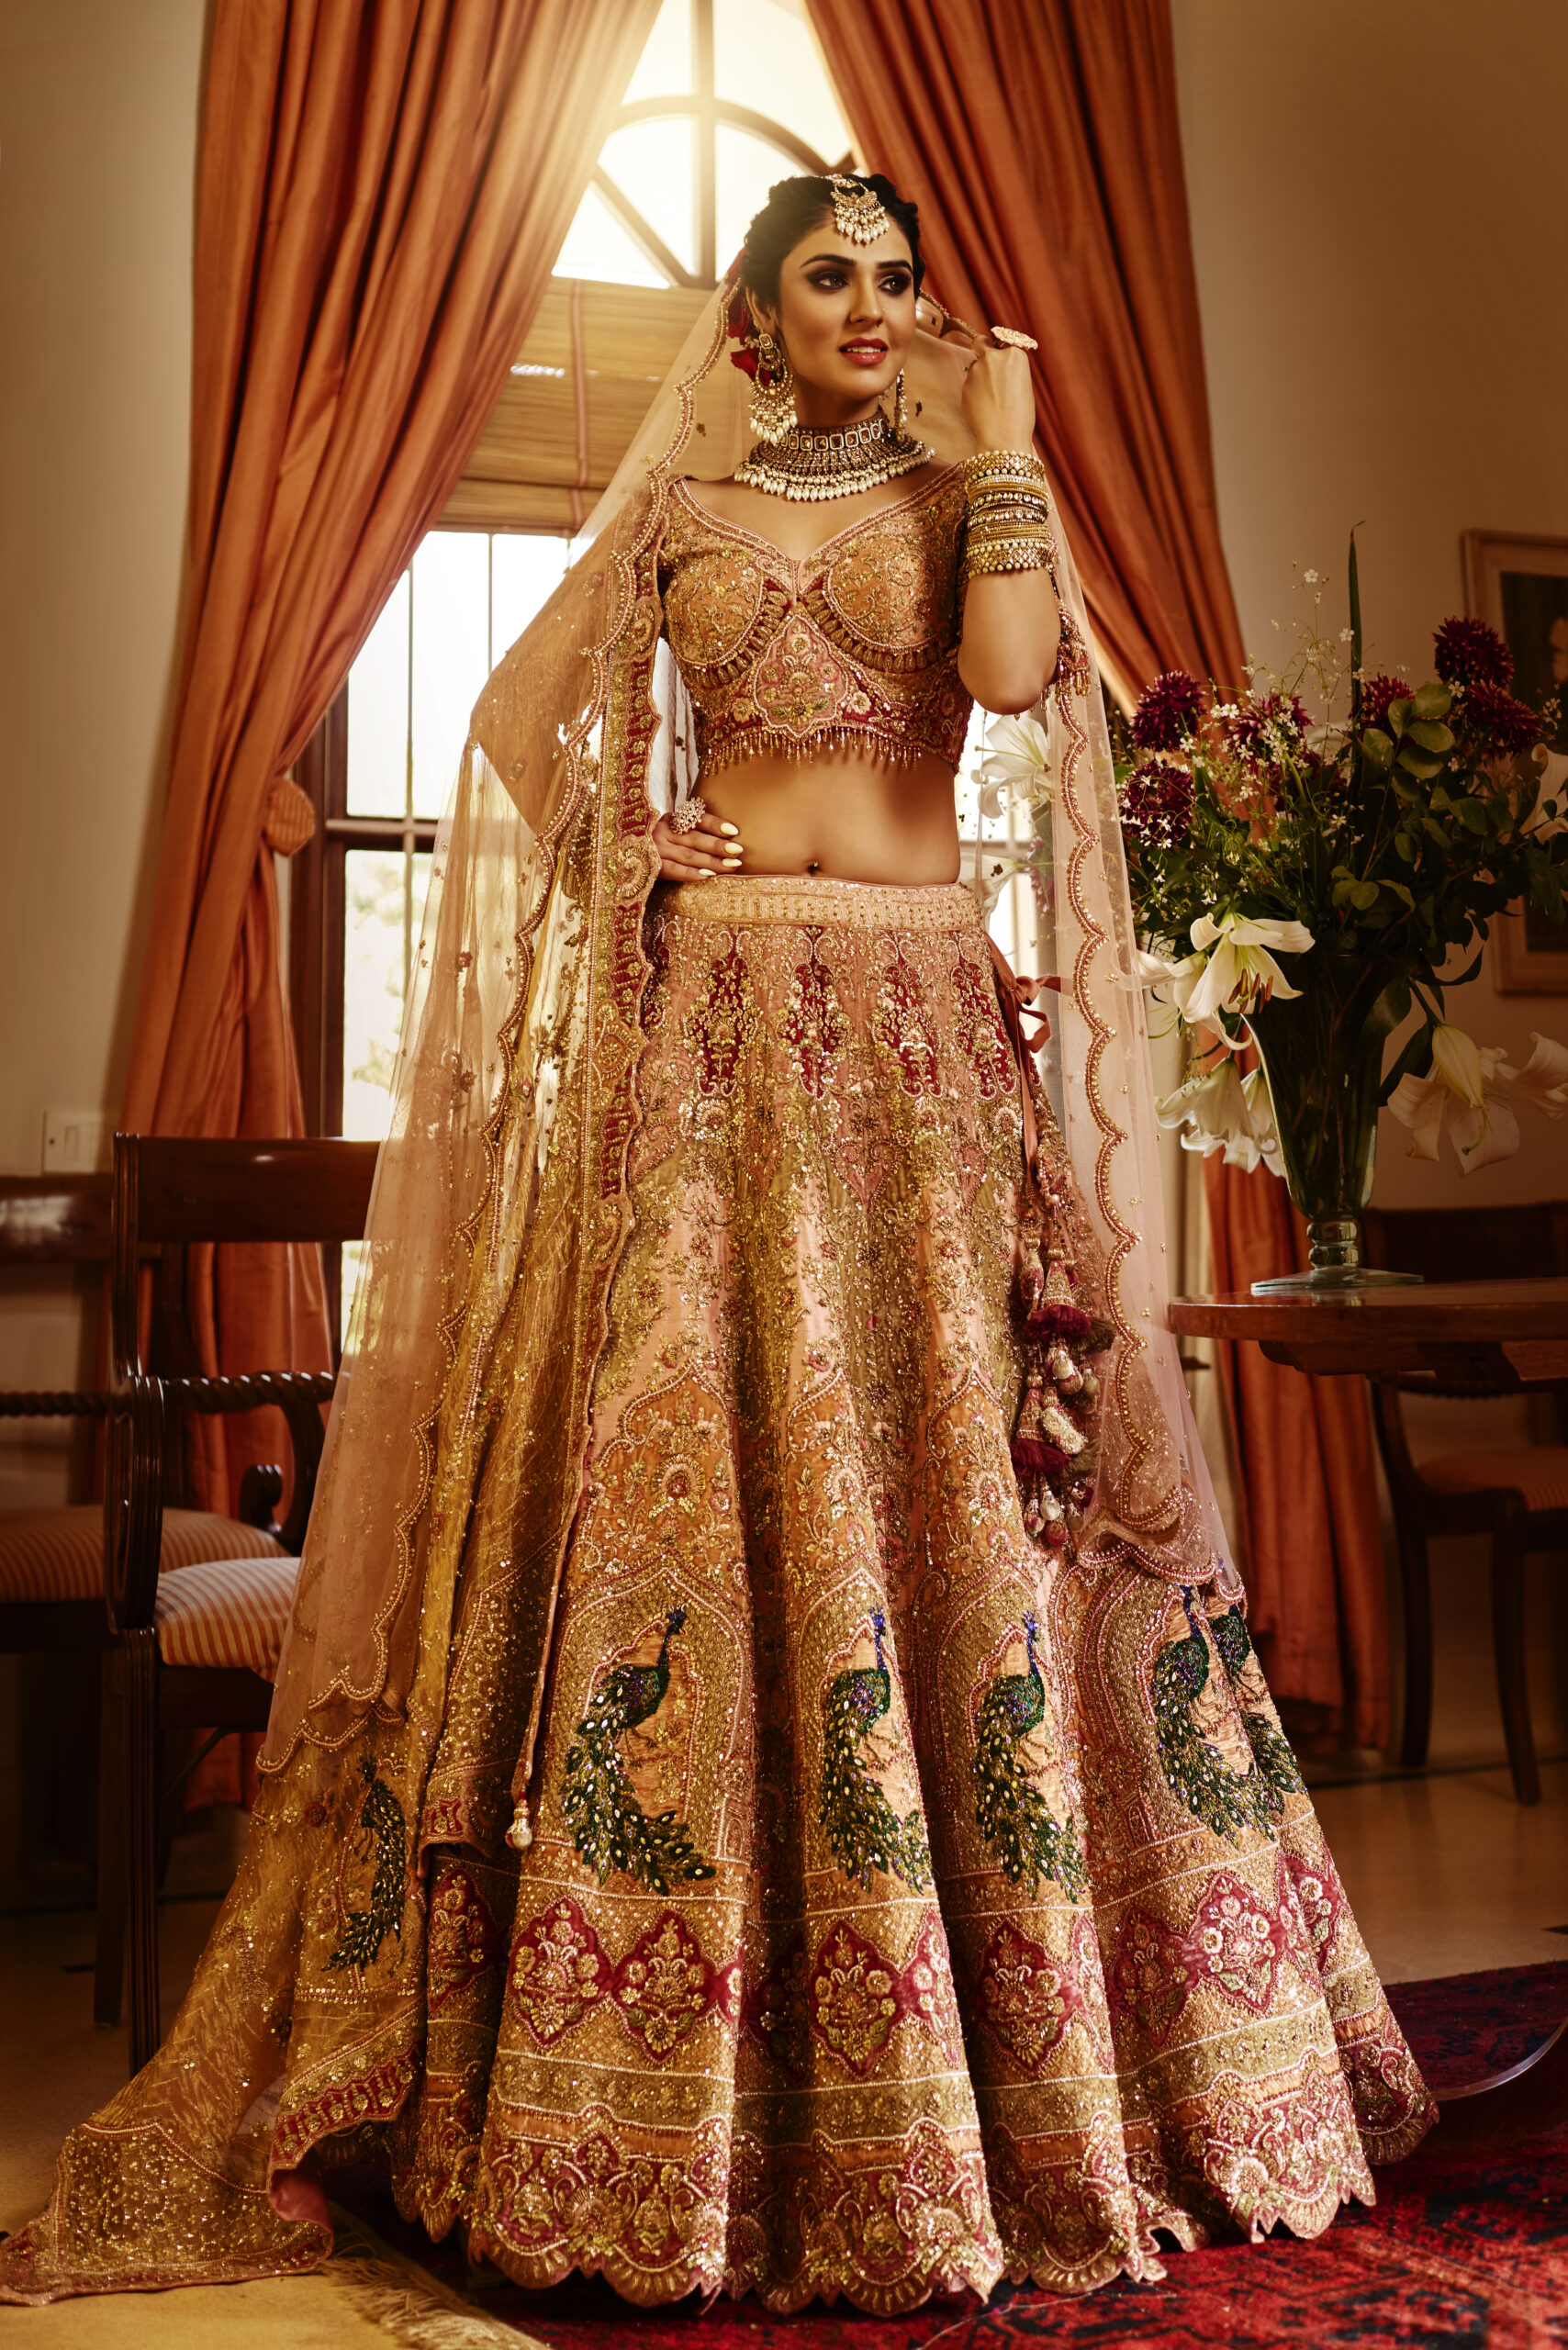 Wedding Manish Malhotra Indian Wedding Lehenga Shadi Walima Nikah Long  Pakistani | eBay